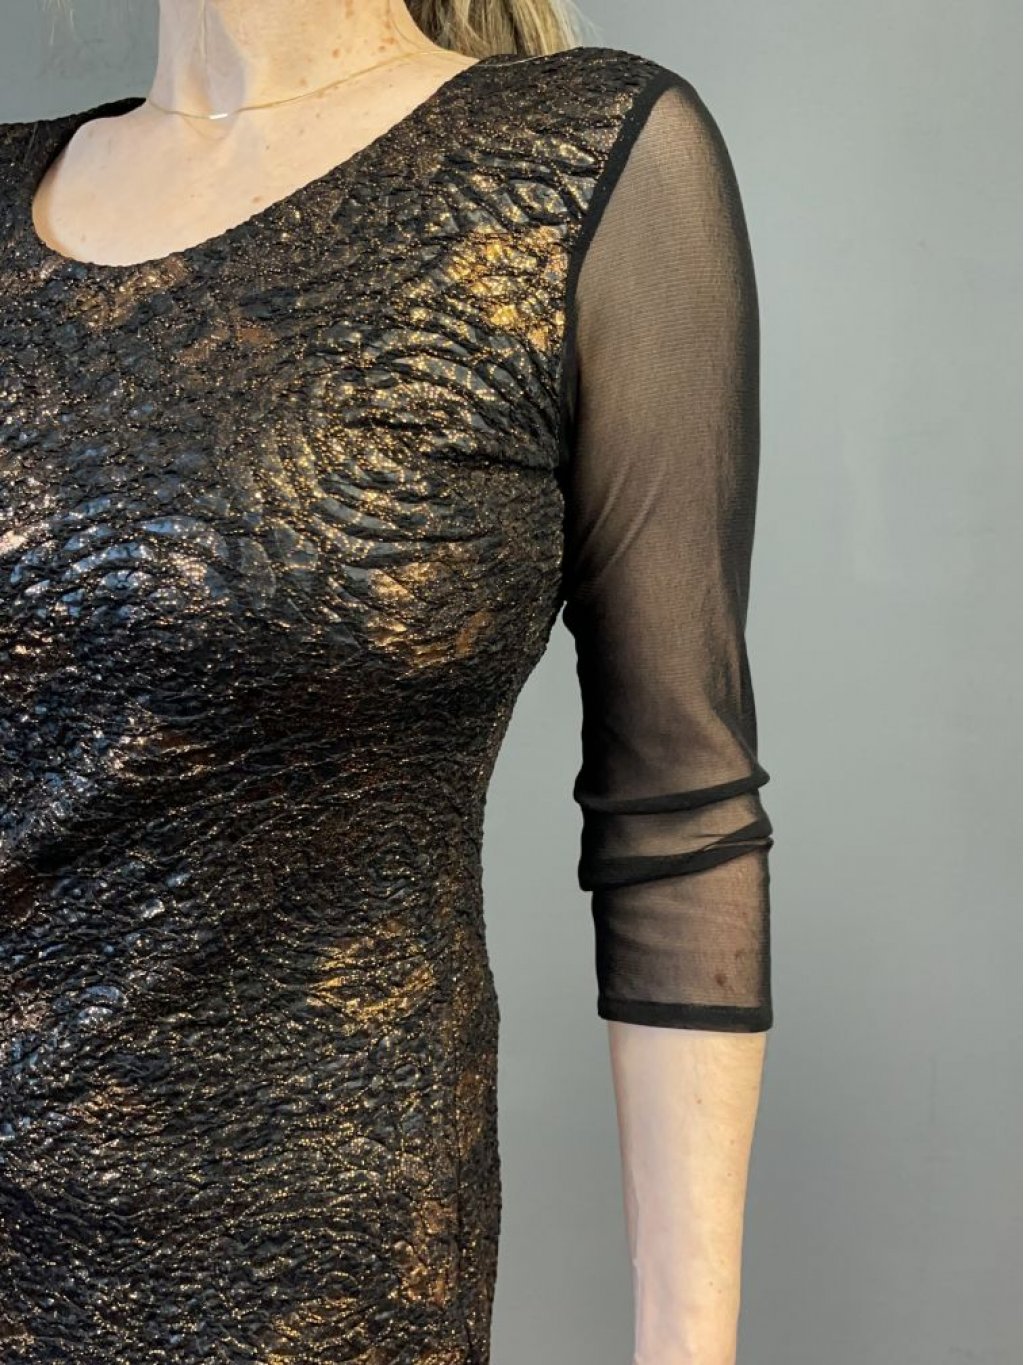 Šaty Jopess 6389 černé s bronzovým třpytem